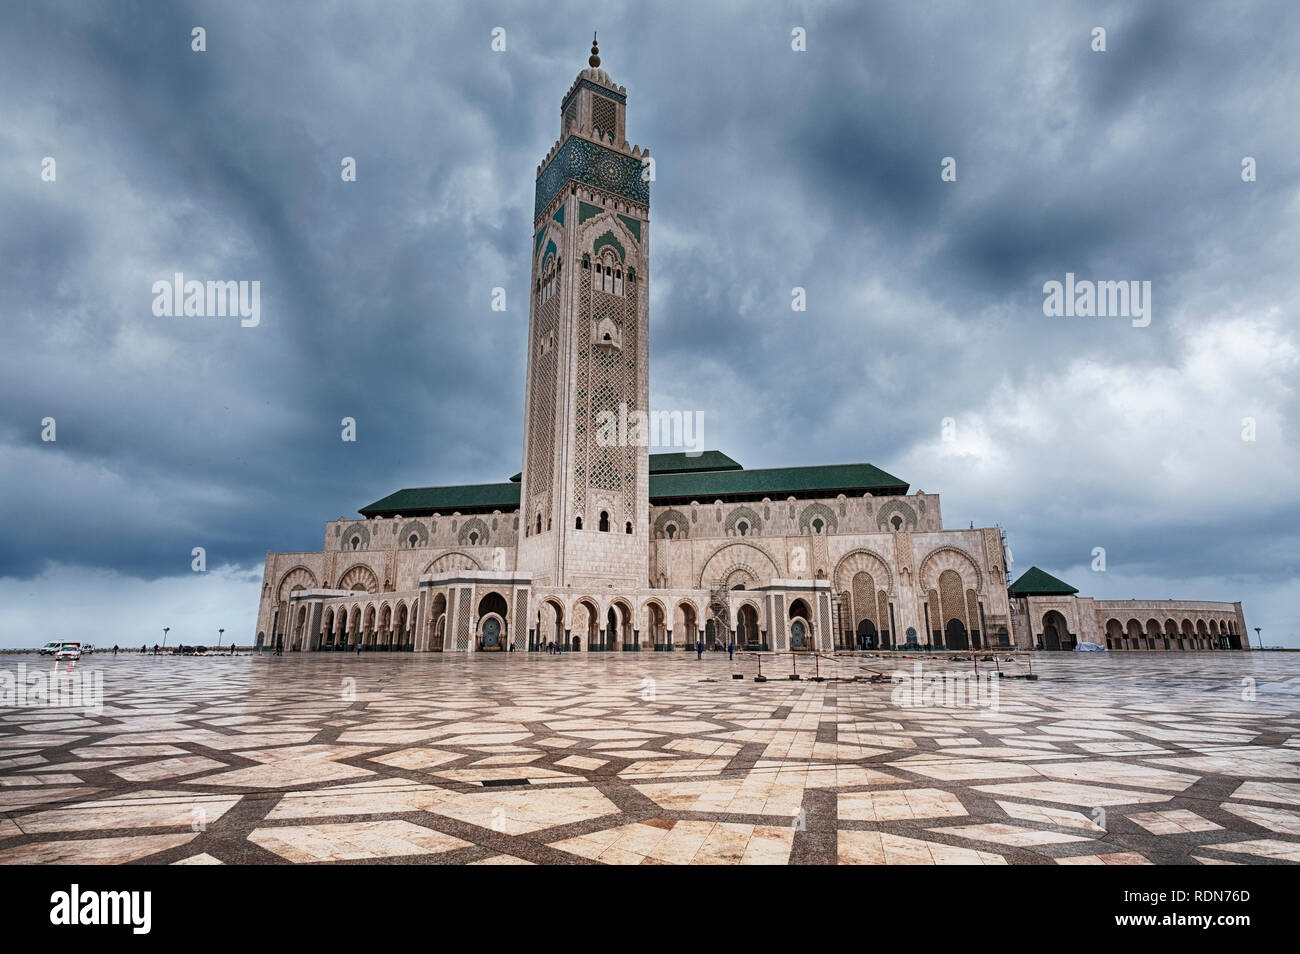 Visto su un enorme piazza fatta di pietra di granito su una notte e giorno nuvoloso, la Moschea di Hassan II a Casablanca, in Marocco è una delle più grandi moschee Foto Stock